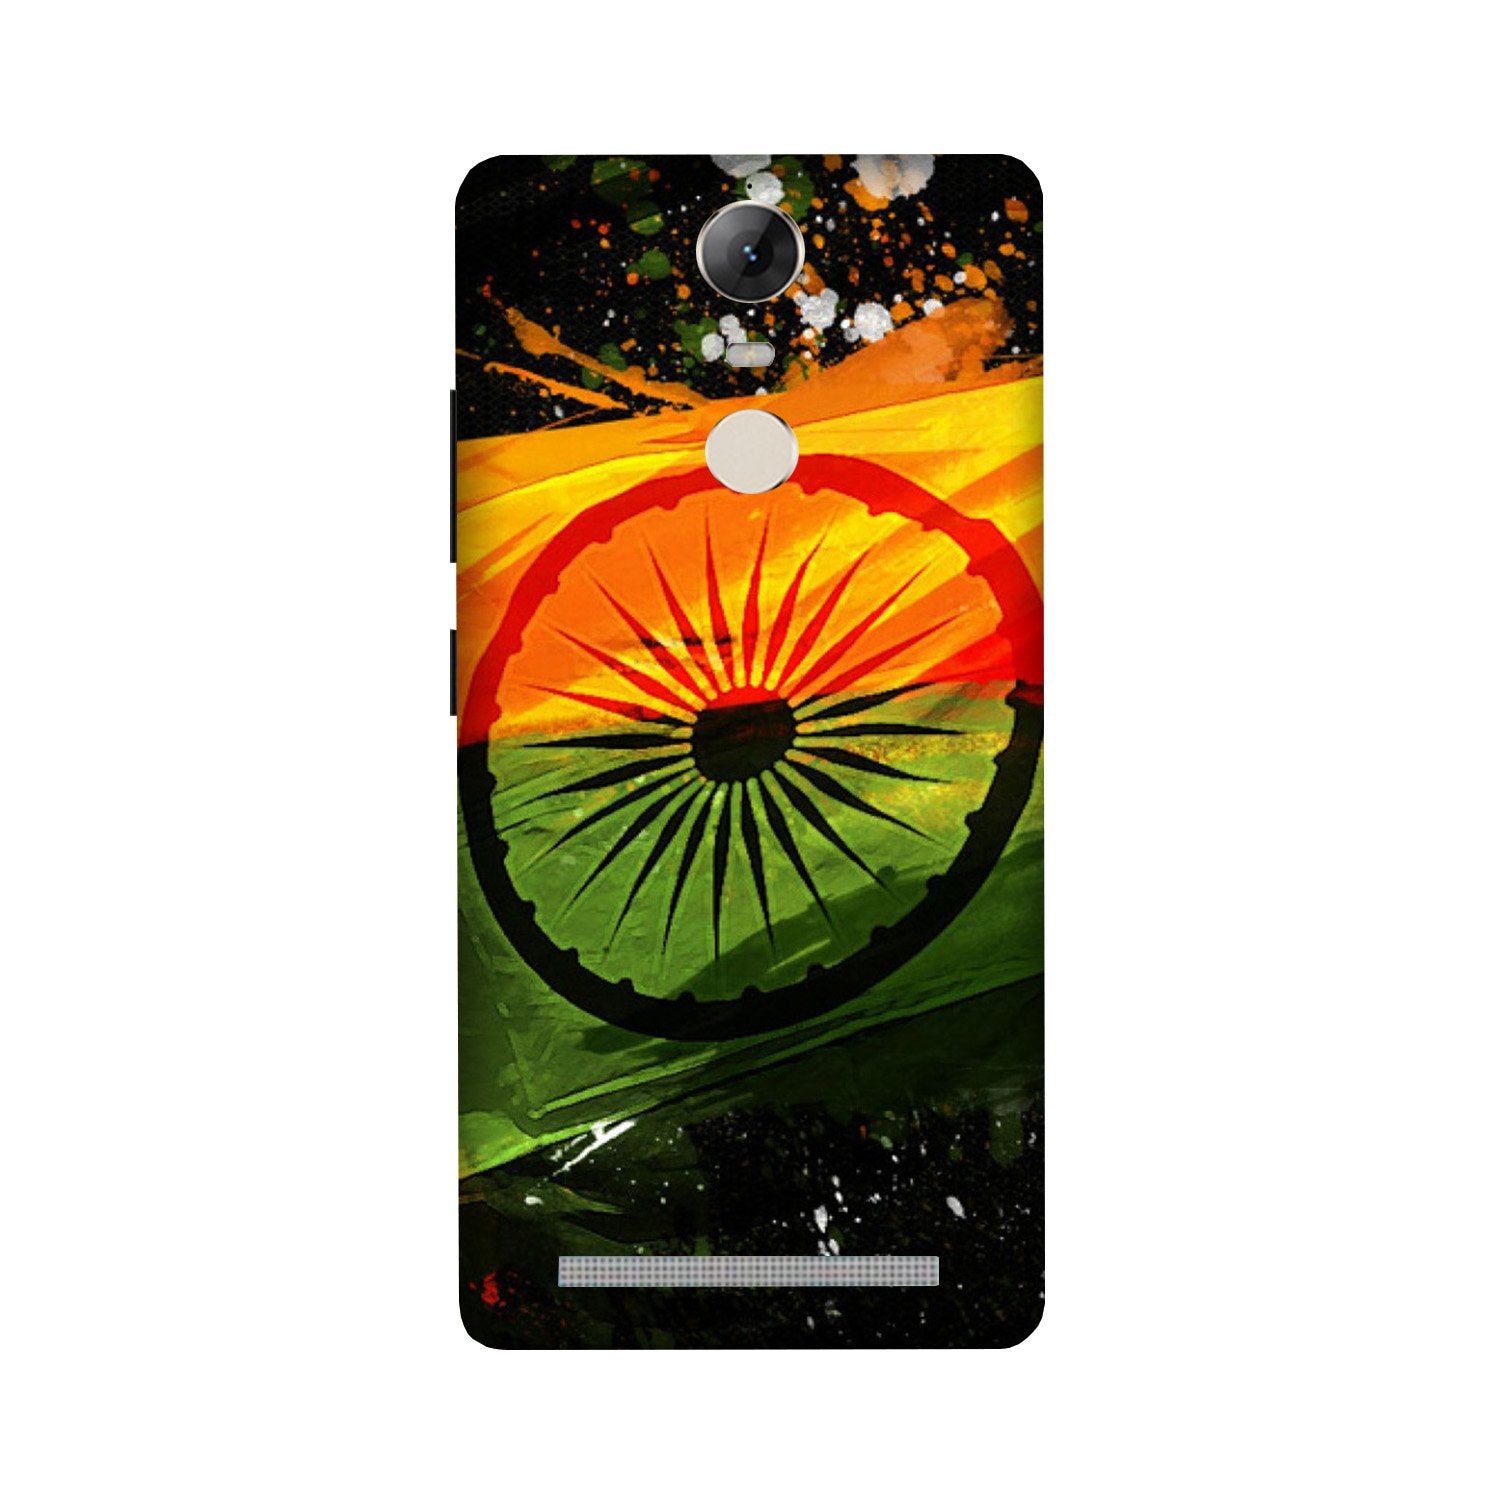 Indian Flag Case for Lenovo Vibe K5 Note(Design - 137)